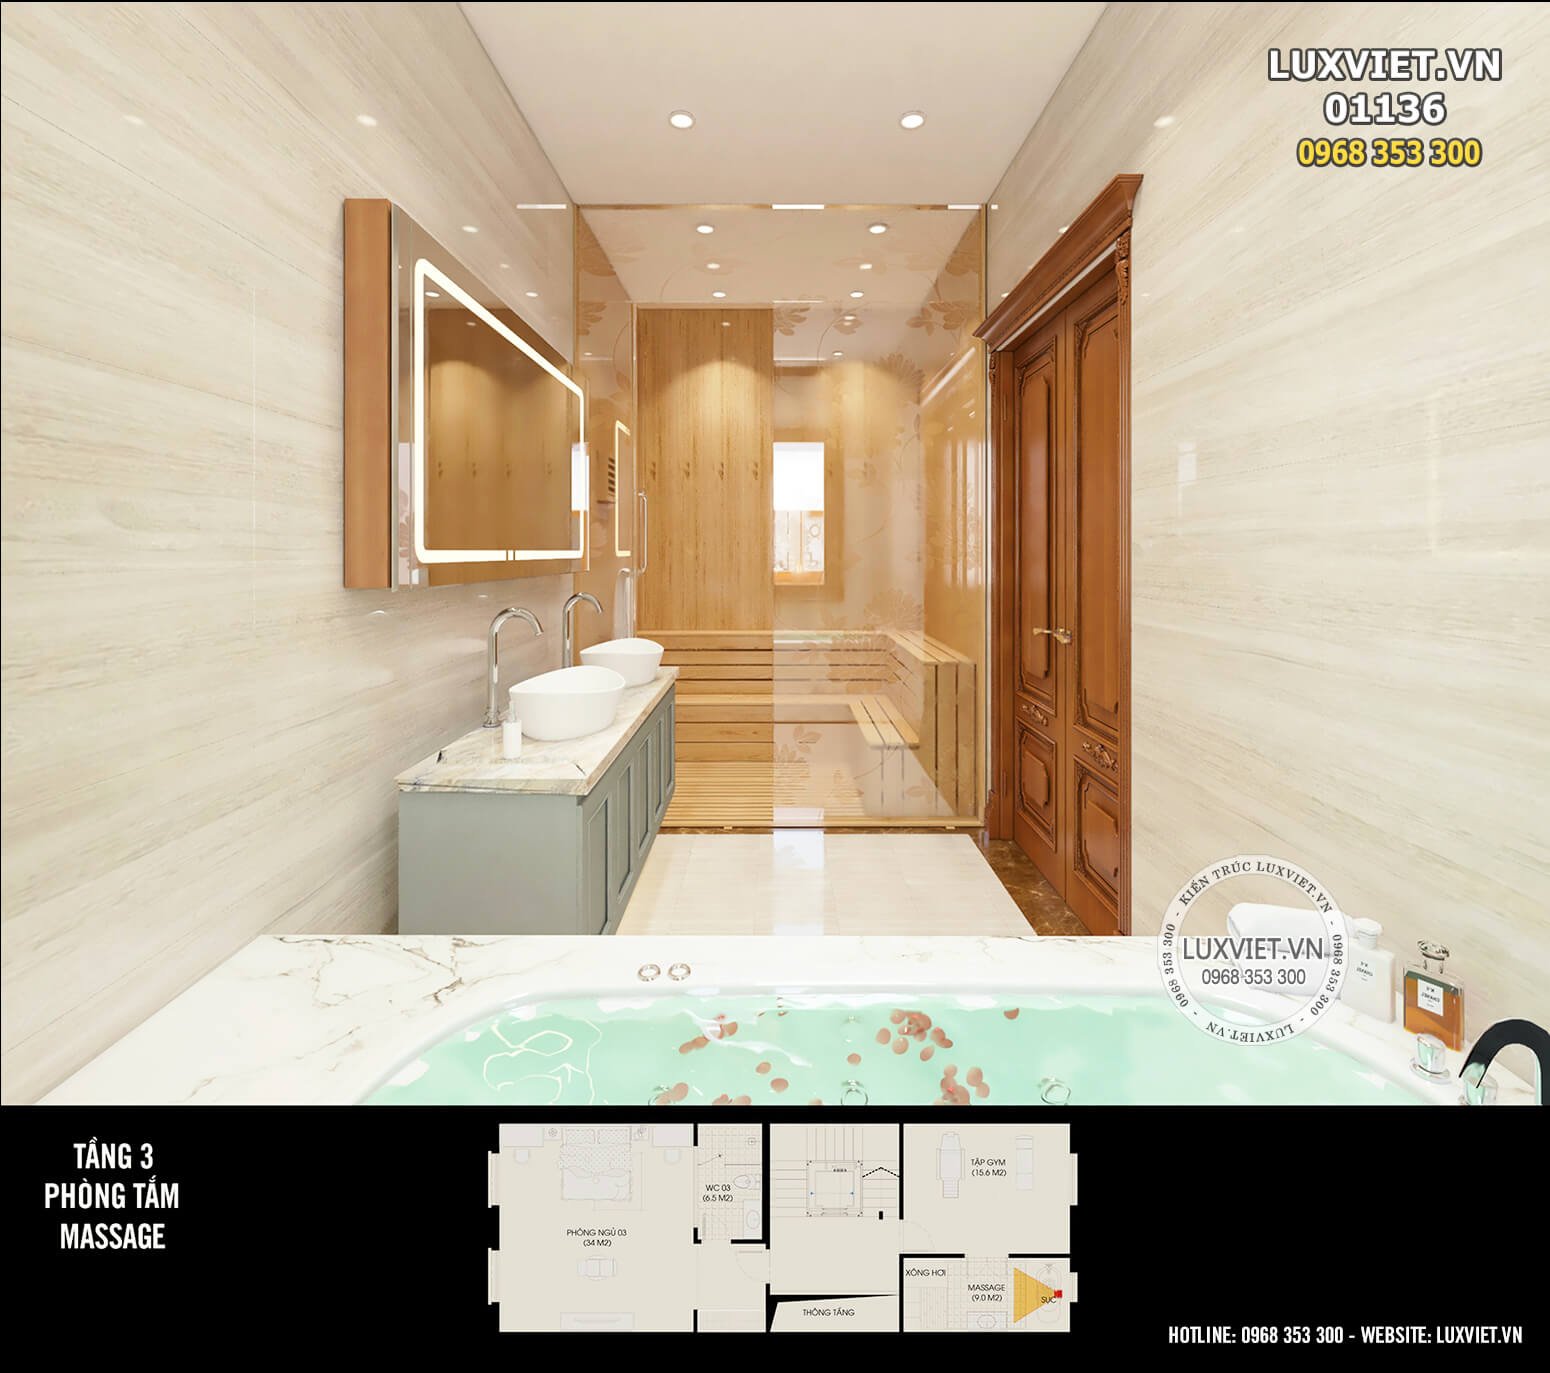 Thiết kế phòng tắm tiện nghi với hệ thống tắm bồn, xông hơi Massage